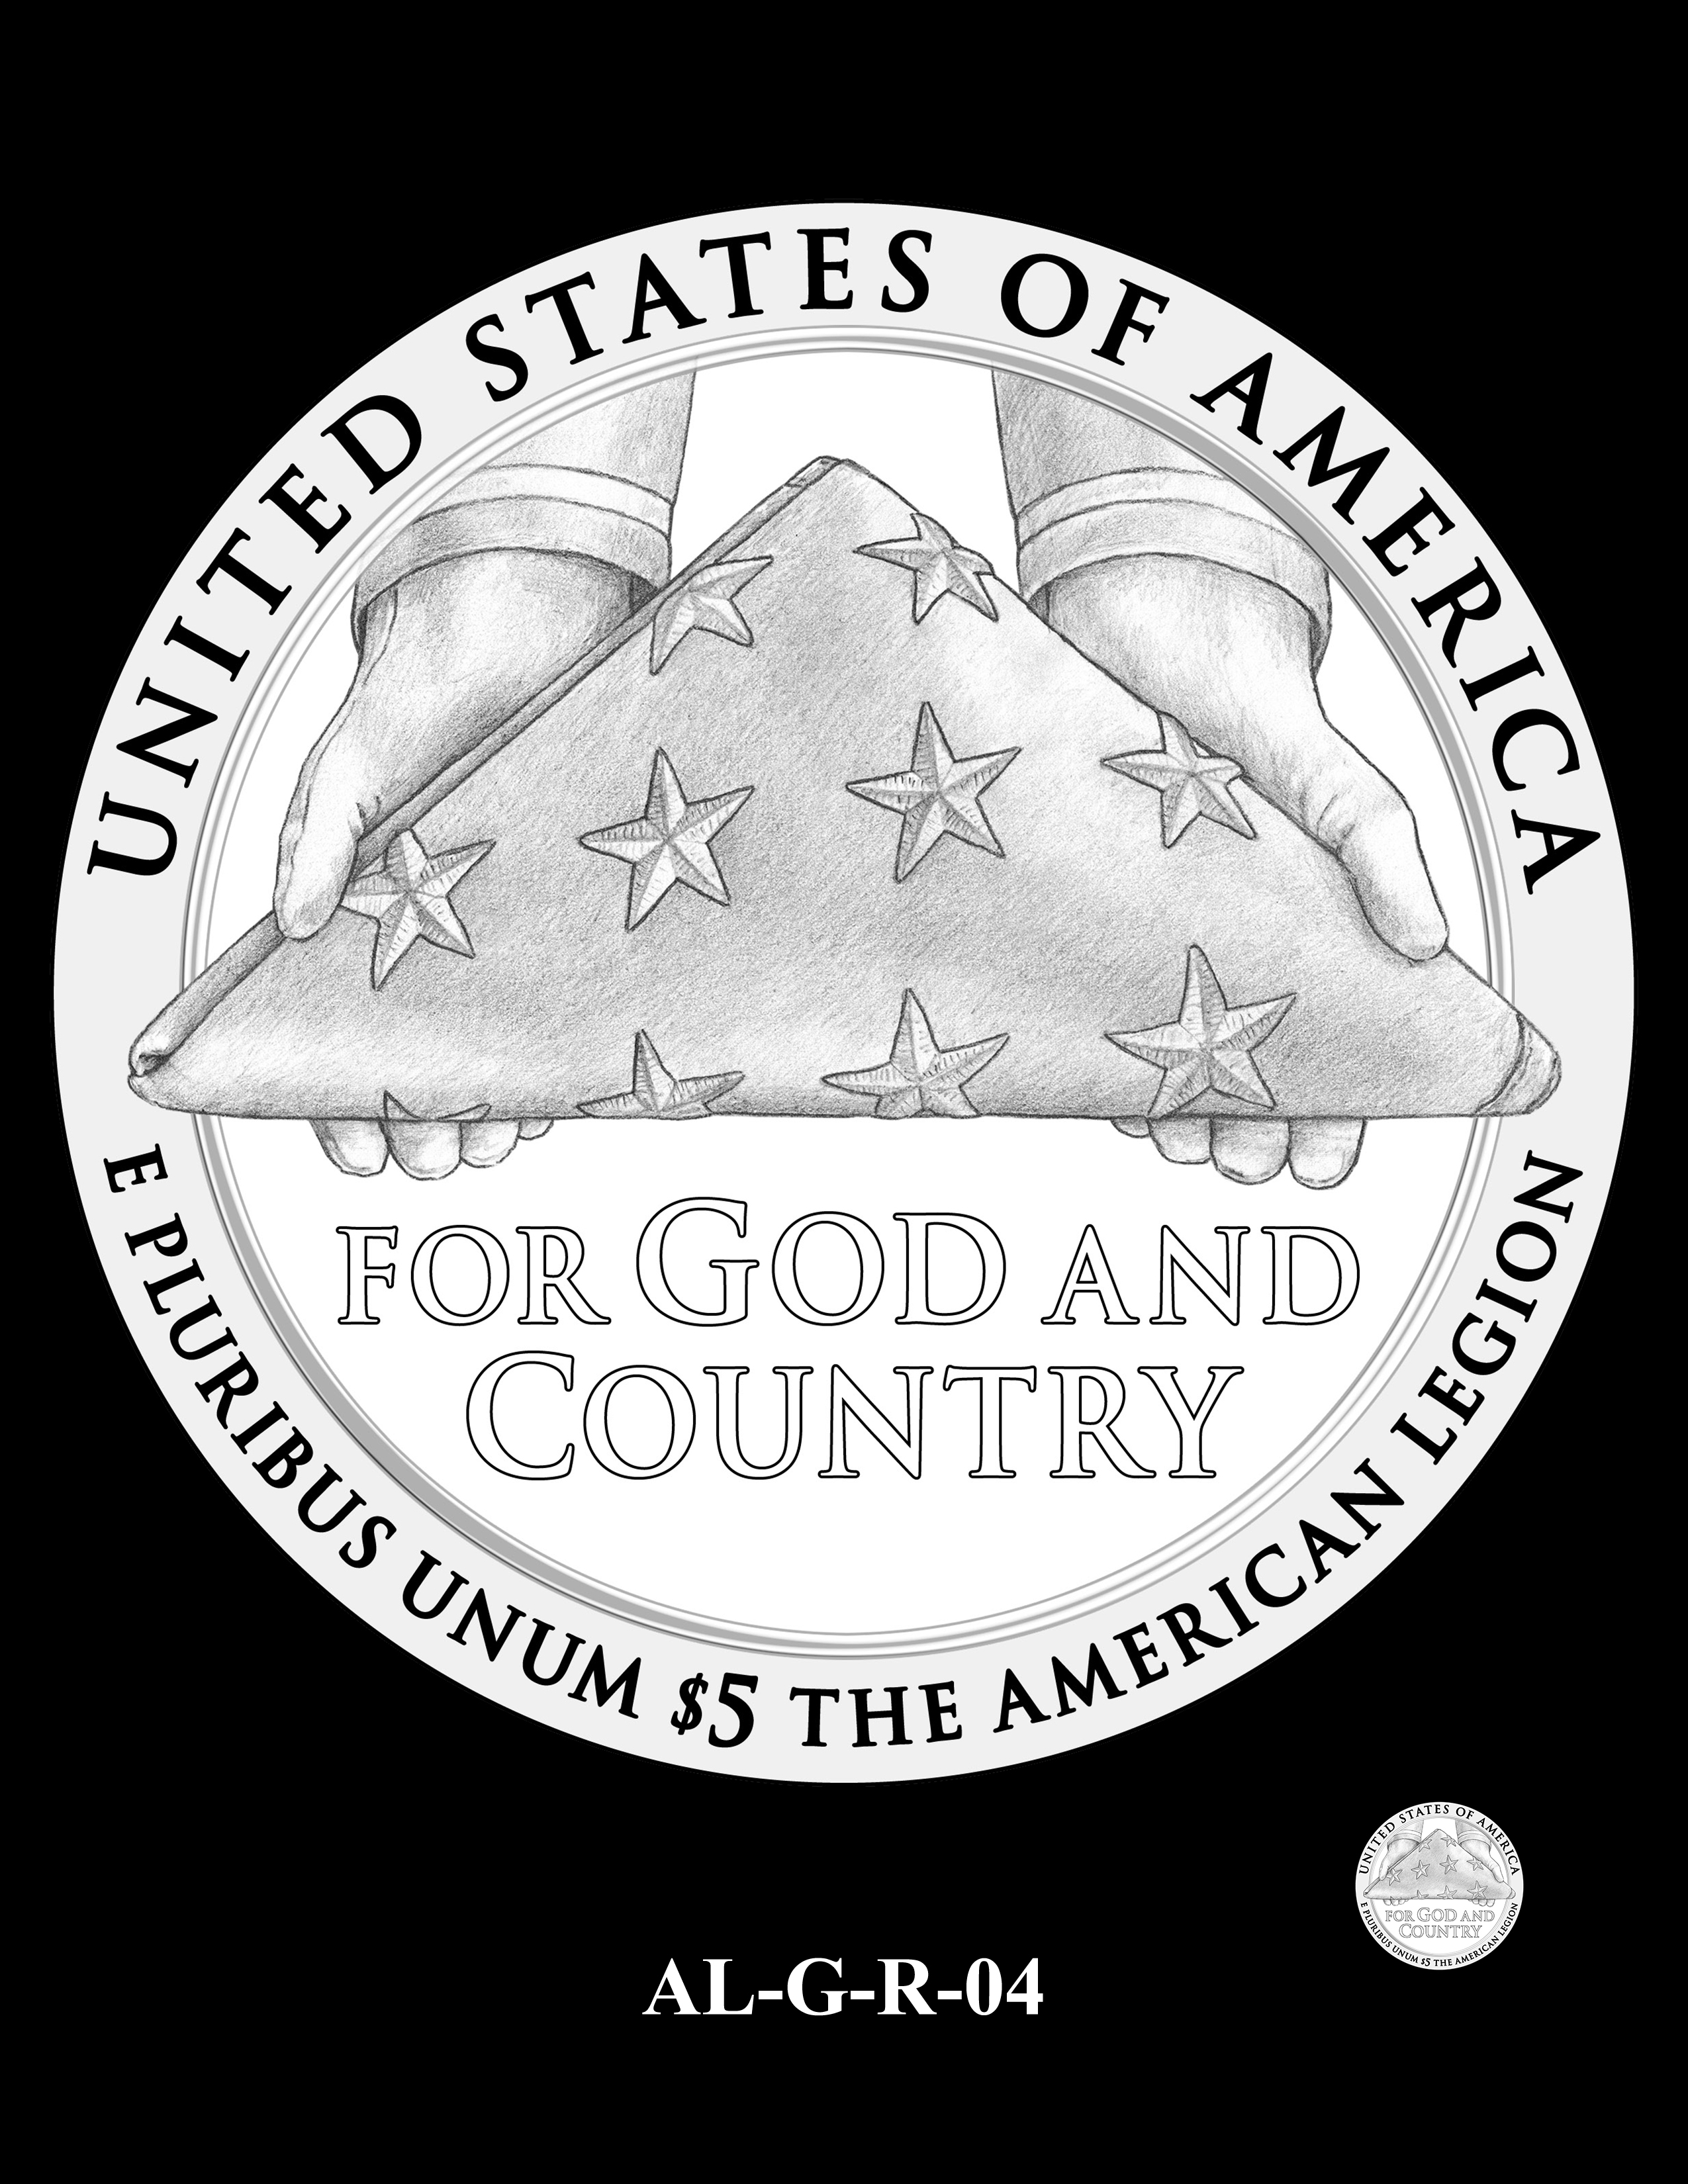 AL-G-R-04 -- 2019 American Legion 100th Anniversary Commemorative Coin Program - Gold Reverse